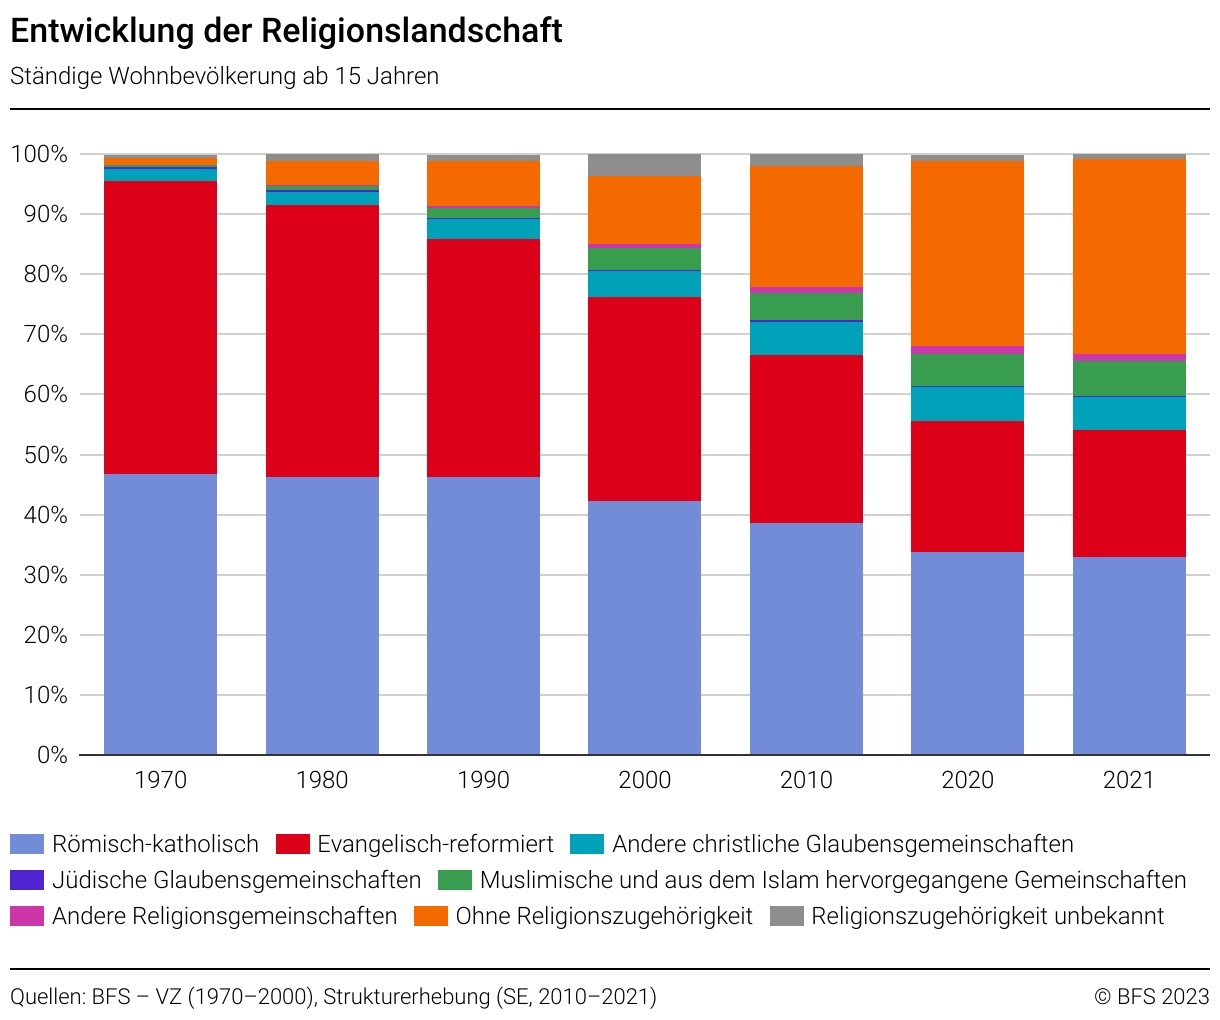 Ständige Wohnbevölkerung ab 15 Jahren nach Religion Quelle: Volkszählung (1970–2000), Strukturerhebung (SE, 2010–2021) von BFS 2023.